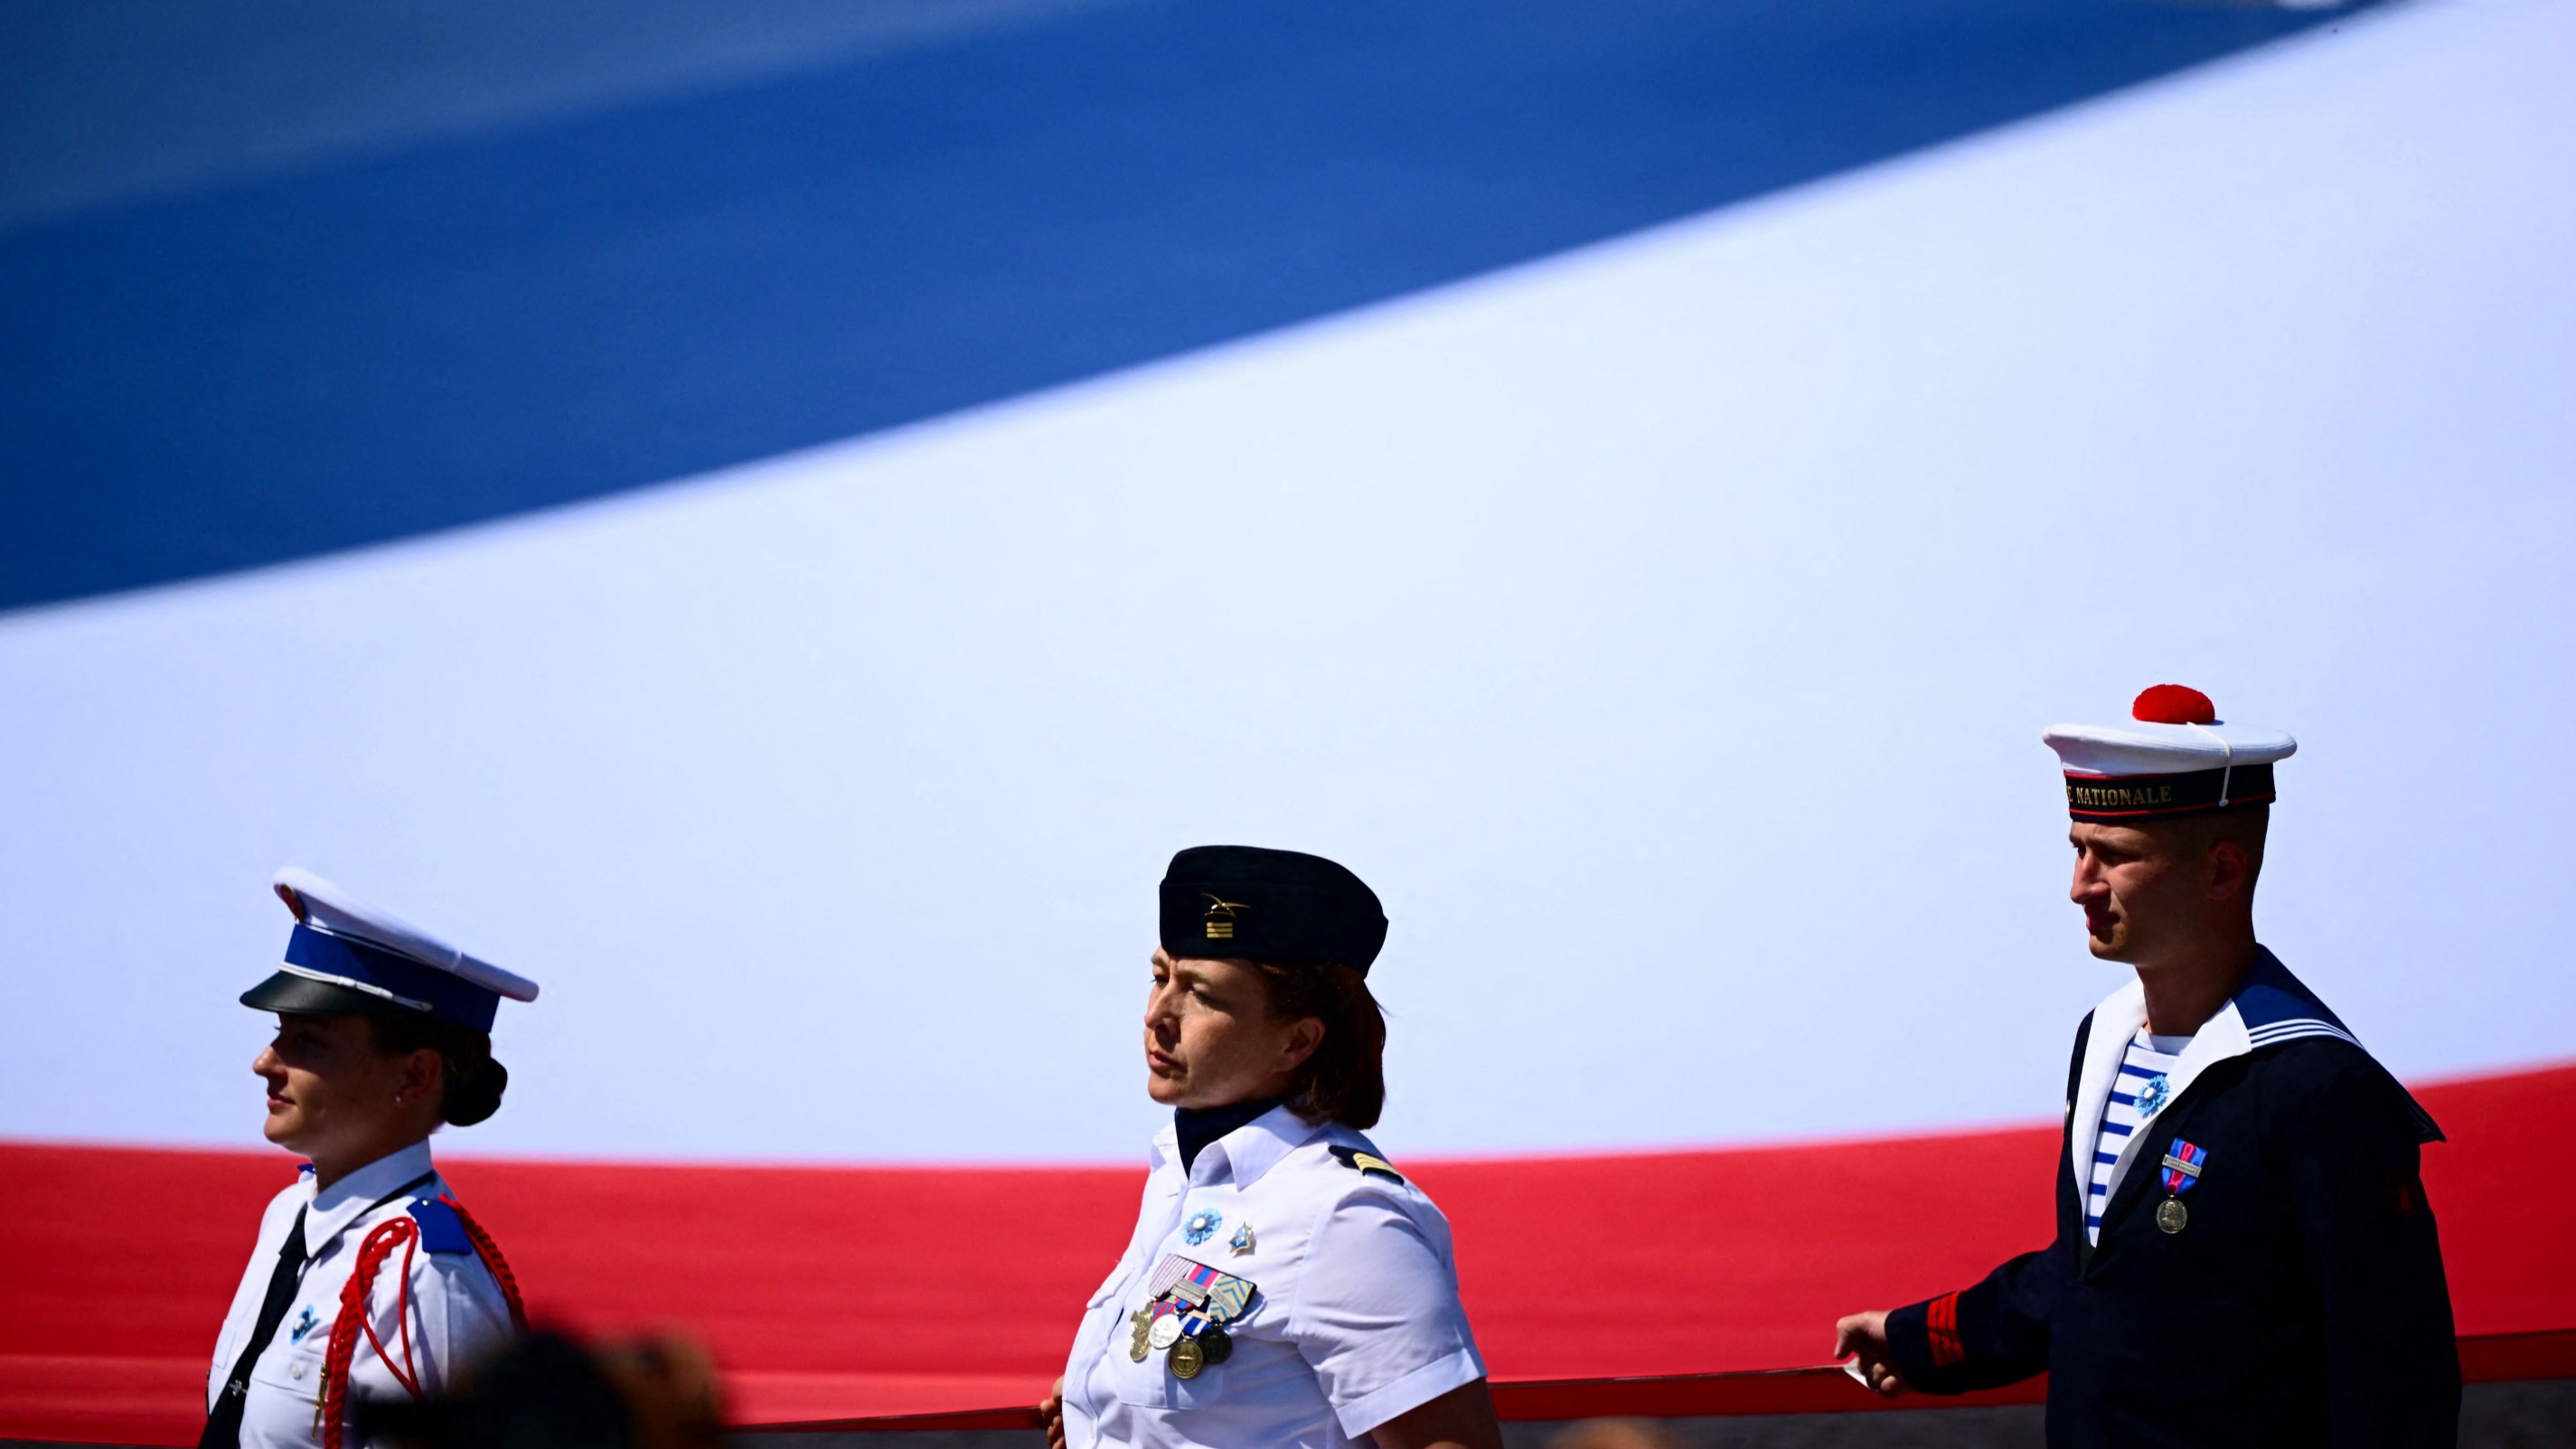 À Saint-Raphaël, les associations recevant des subventions obligées d’assister aux cérémonies patriotiques